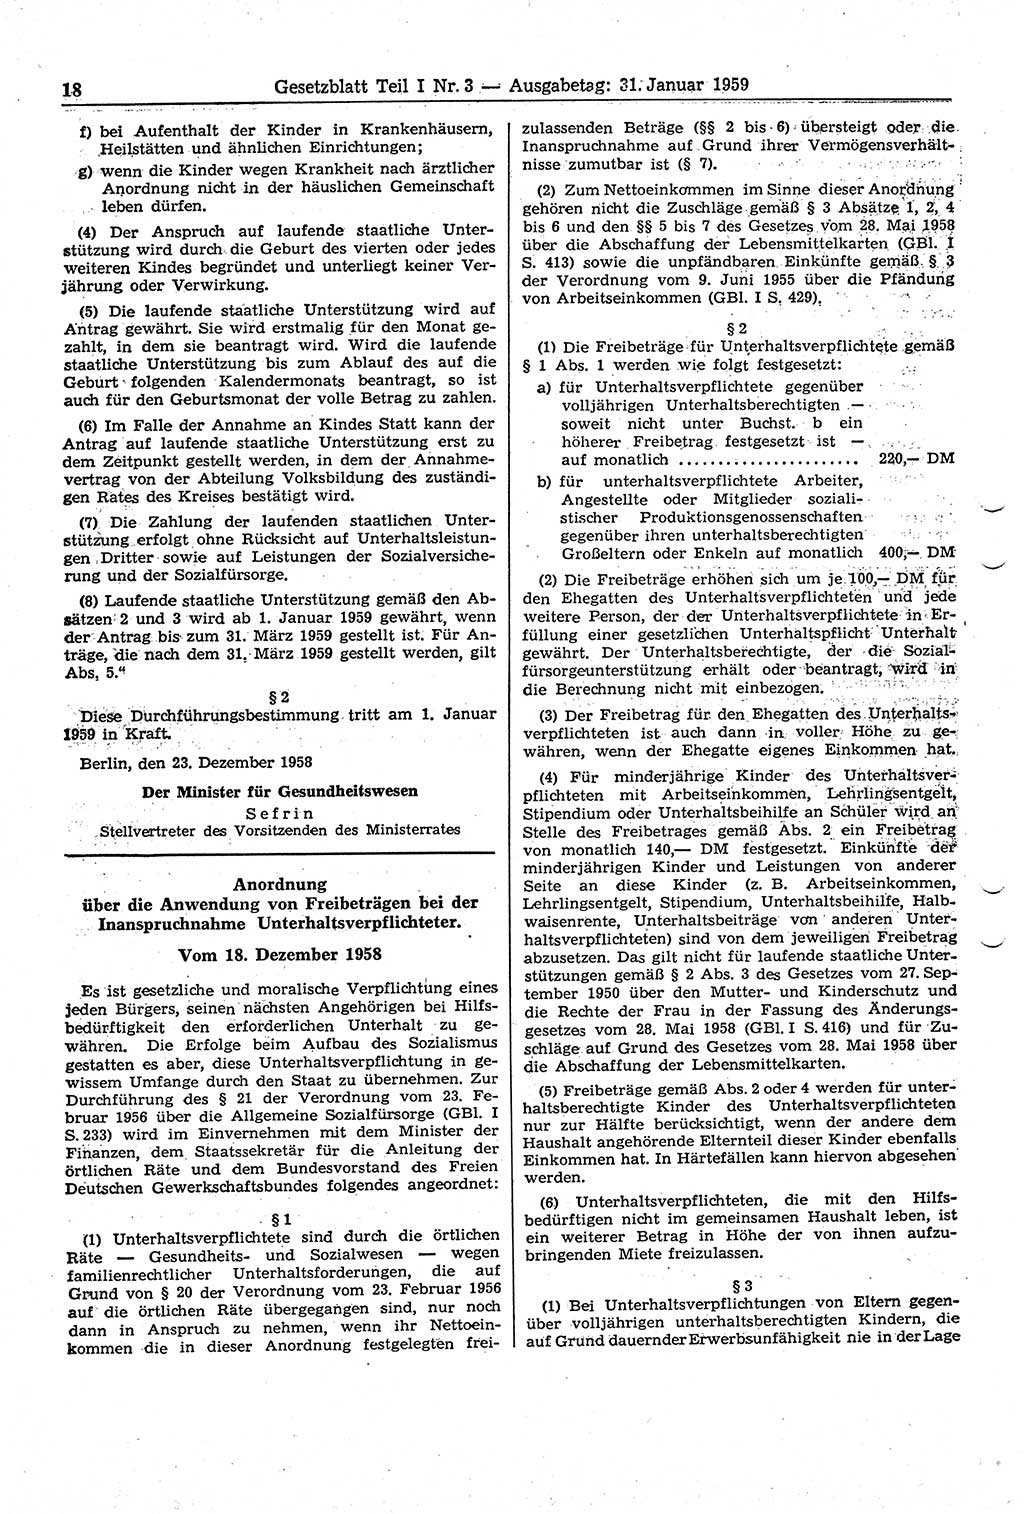 Gesetzblatt (GBl.) der Deutschen Demokratischen Republik (DDR) Teil Ⅰ 1959, Seite 18 (GBl. DDR Ⅰ 1959, S. 18)